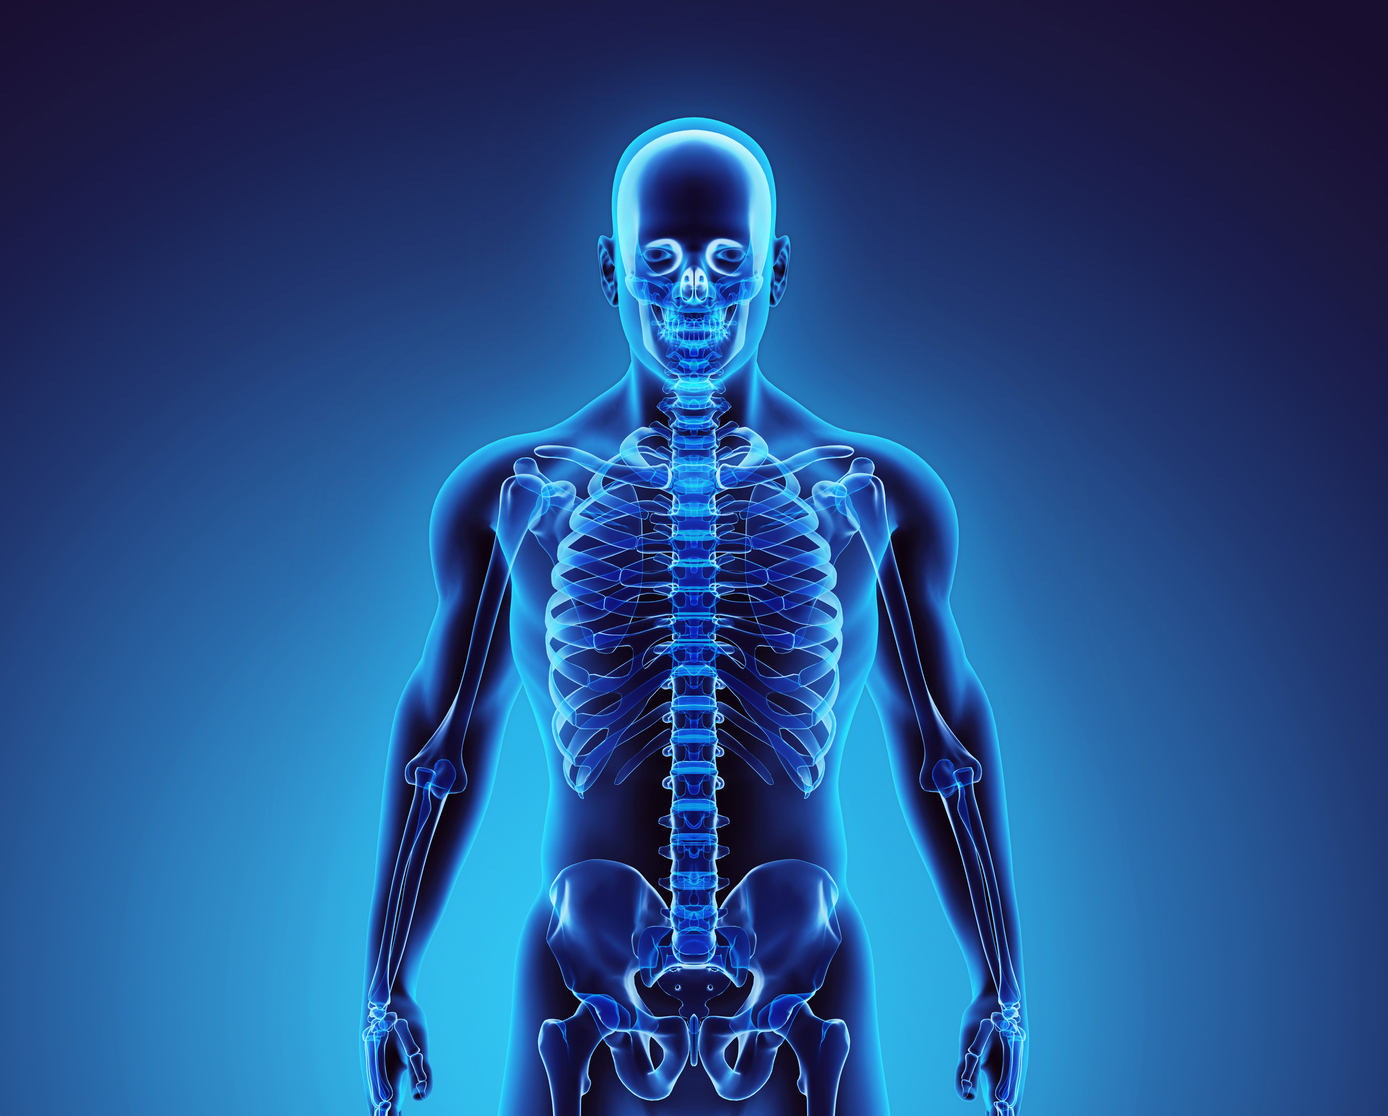 3D illustration of human skeleton